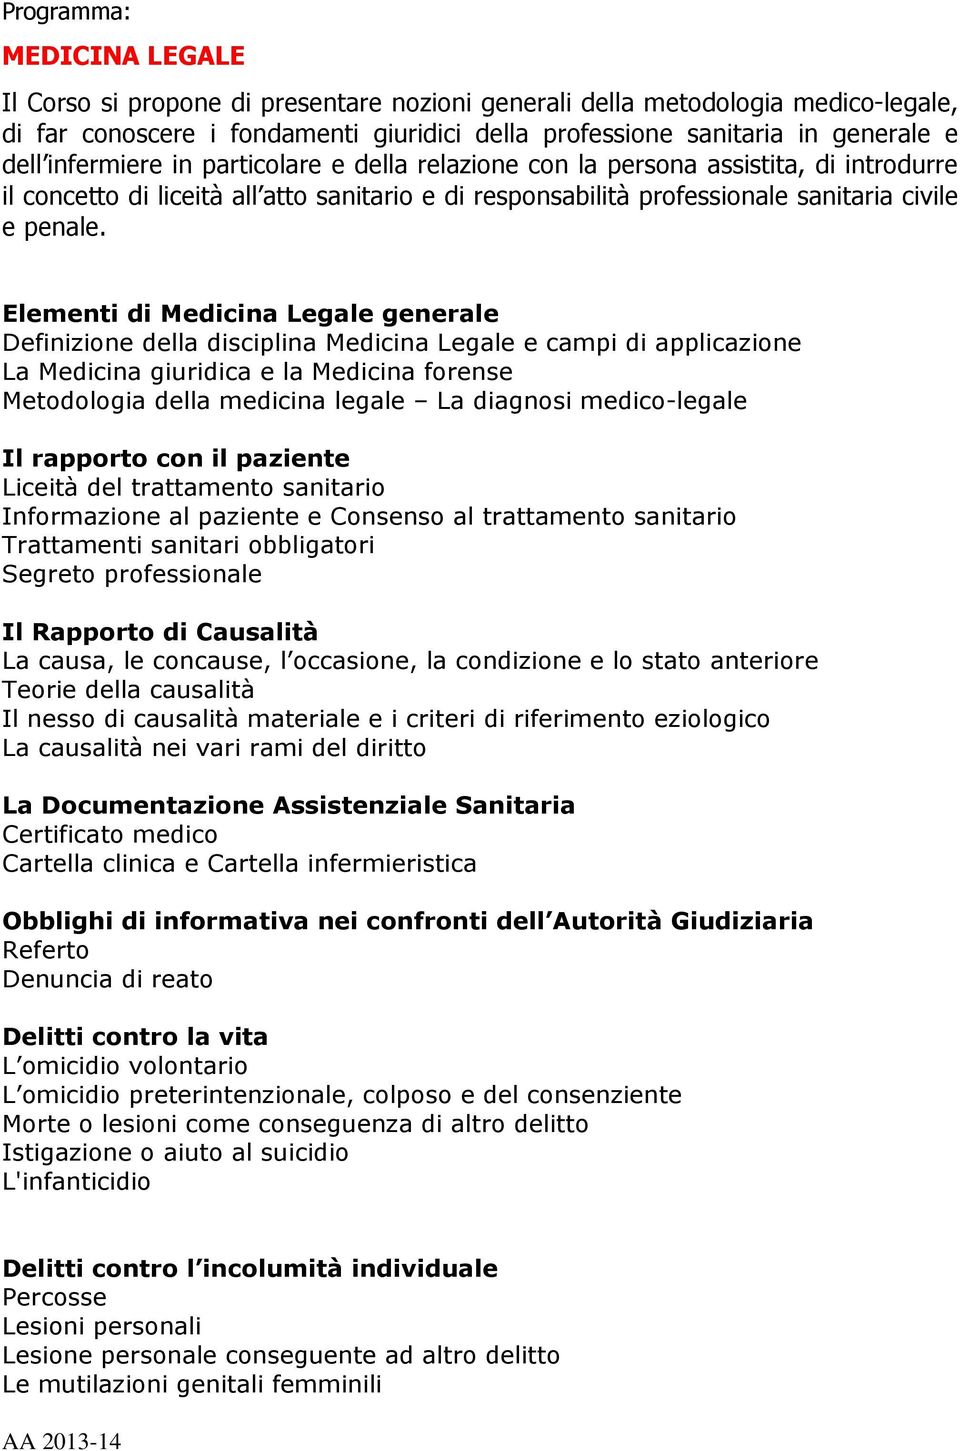 Elementi di Medicina Legale generale Definizione della disciplina Medicina Legale e campi di applicazione La Medicina giuridica e la Medicina forense Metodologia della medicina legale La diagnosi